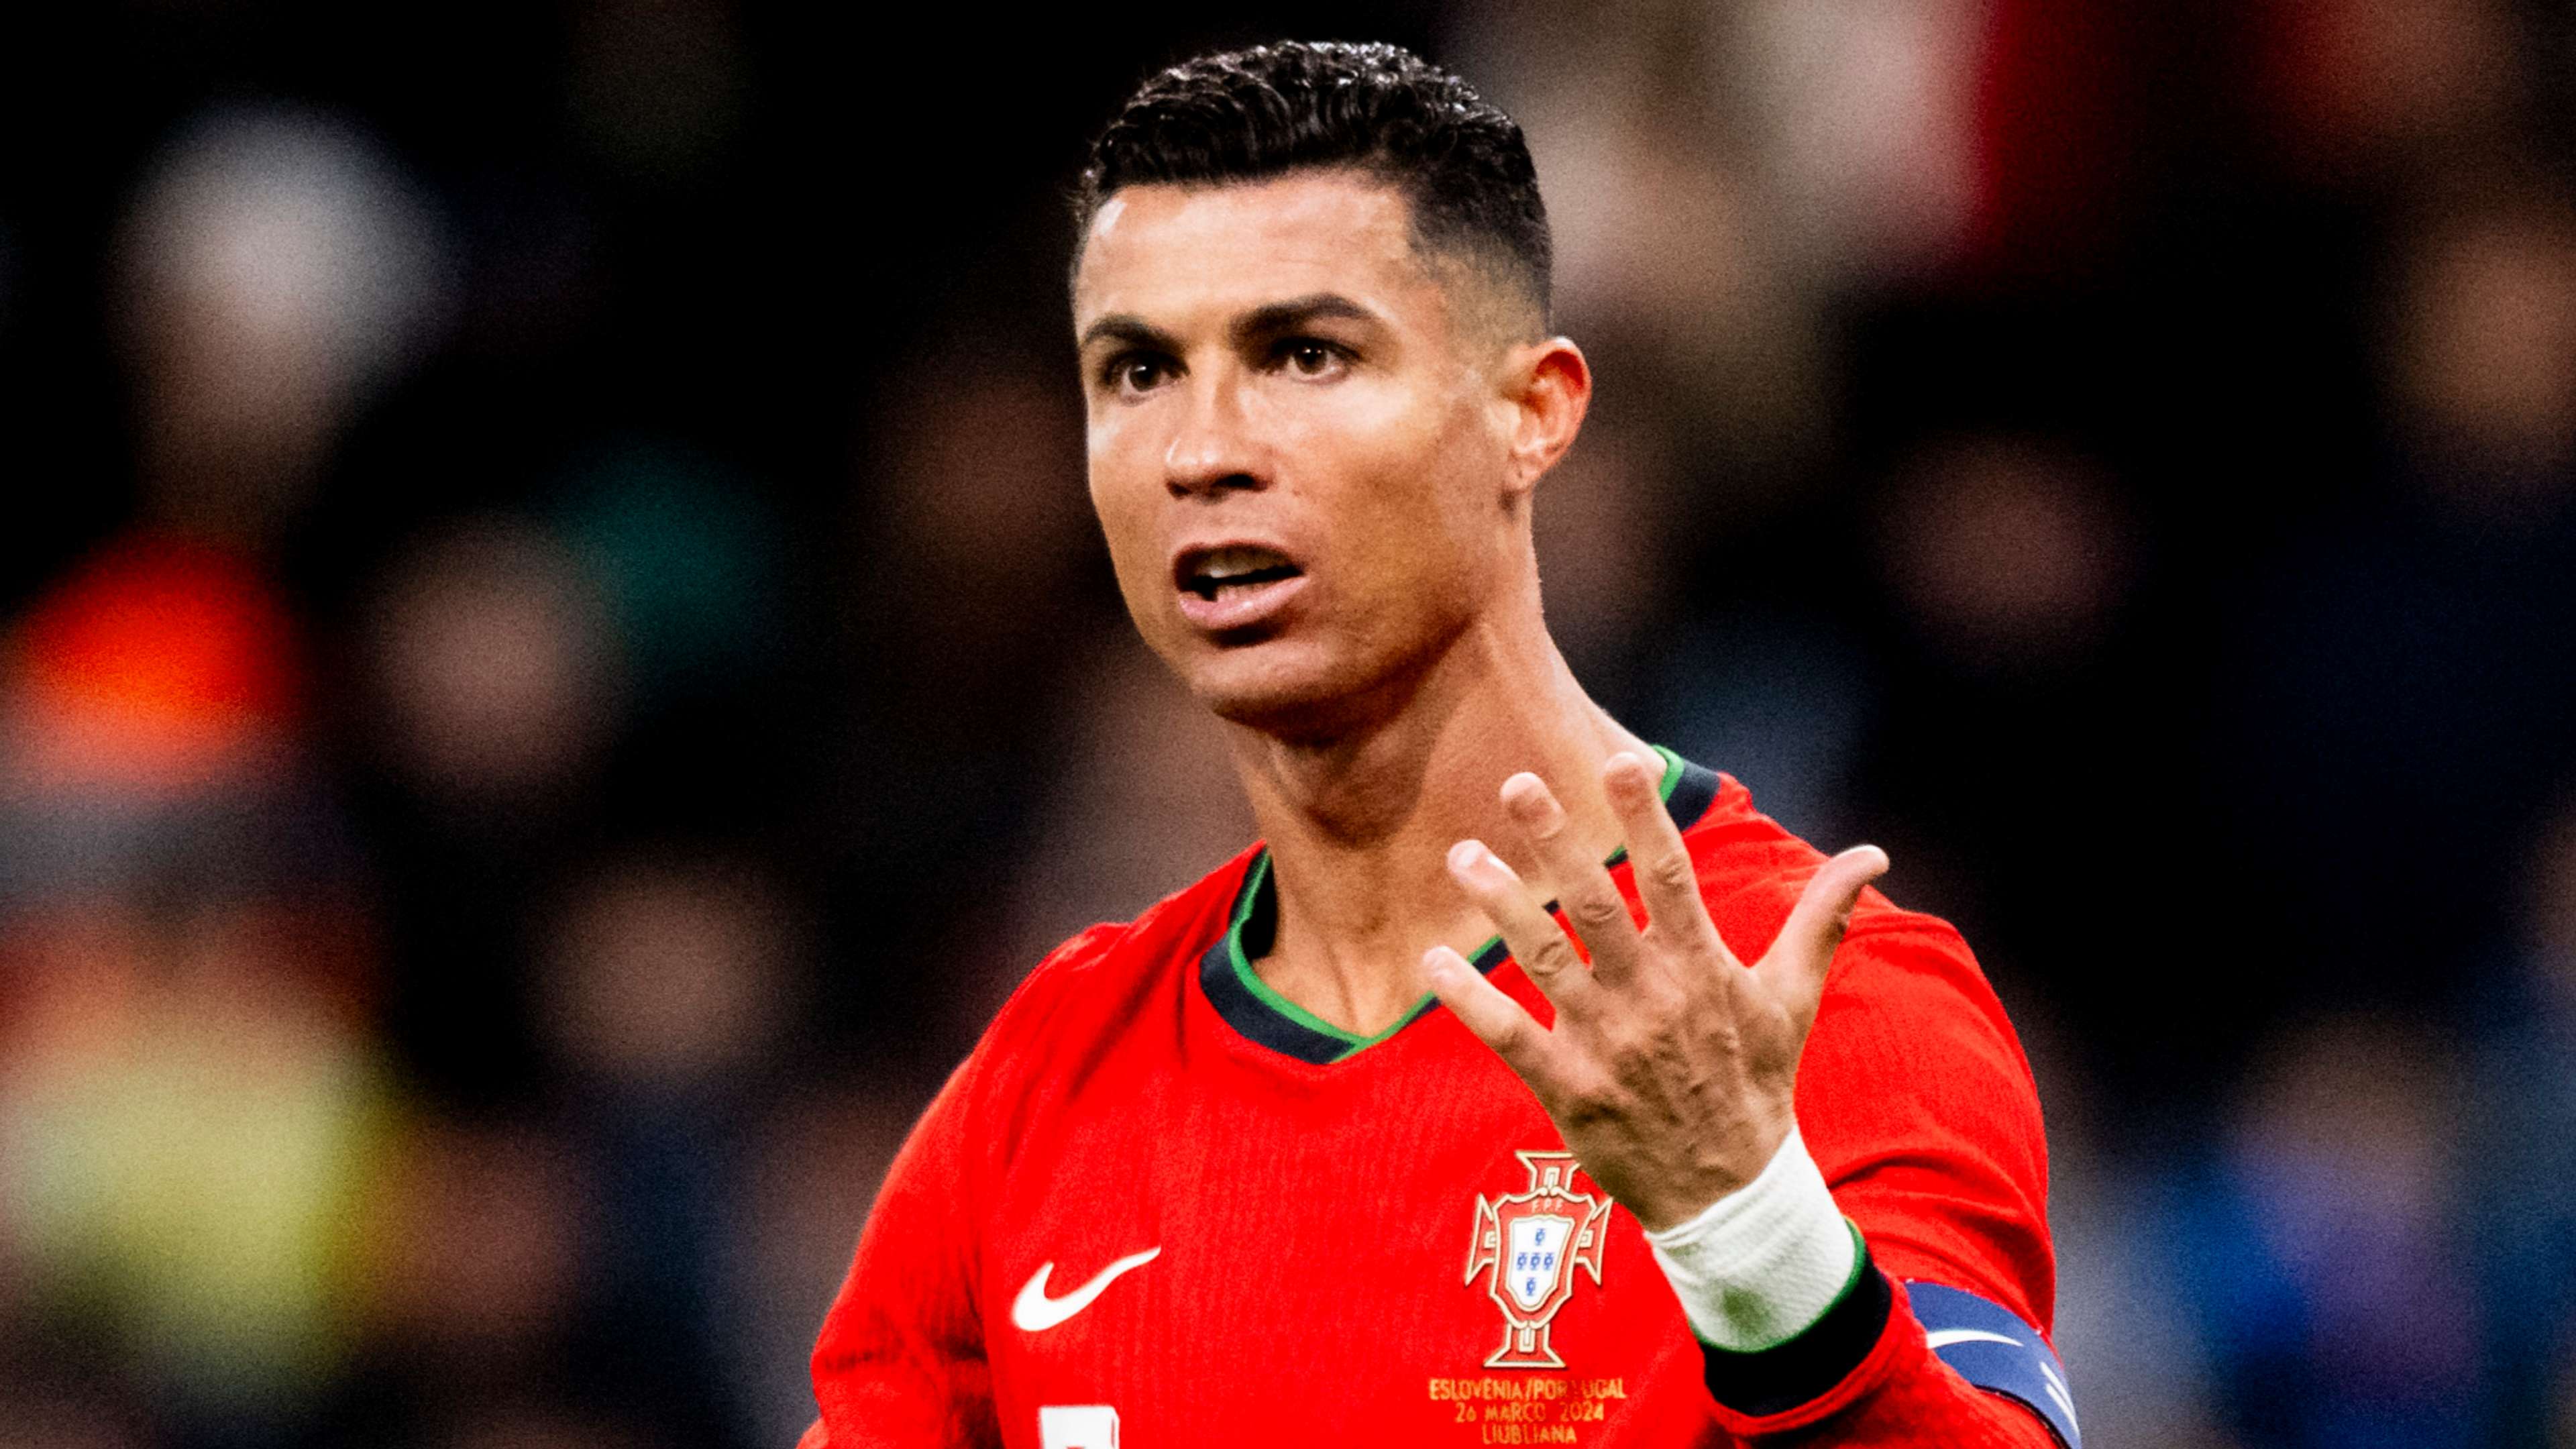 Giải thích: Cristiano Ronaldo có phẫu thuật thẩm mỹ hay không? | Goal.com Việt Nam